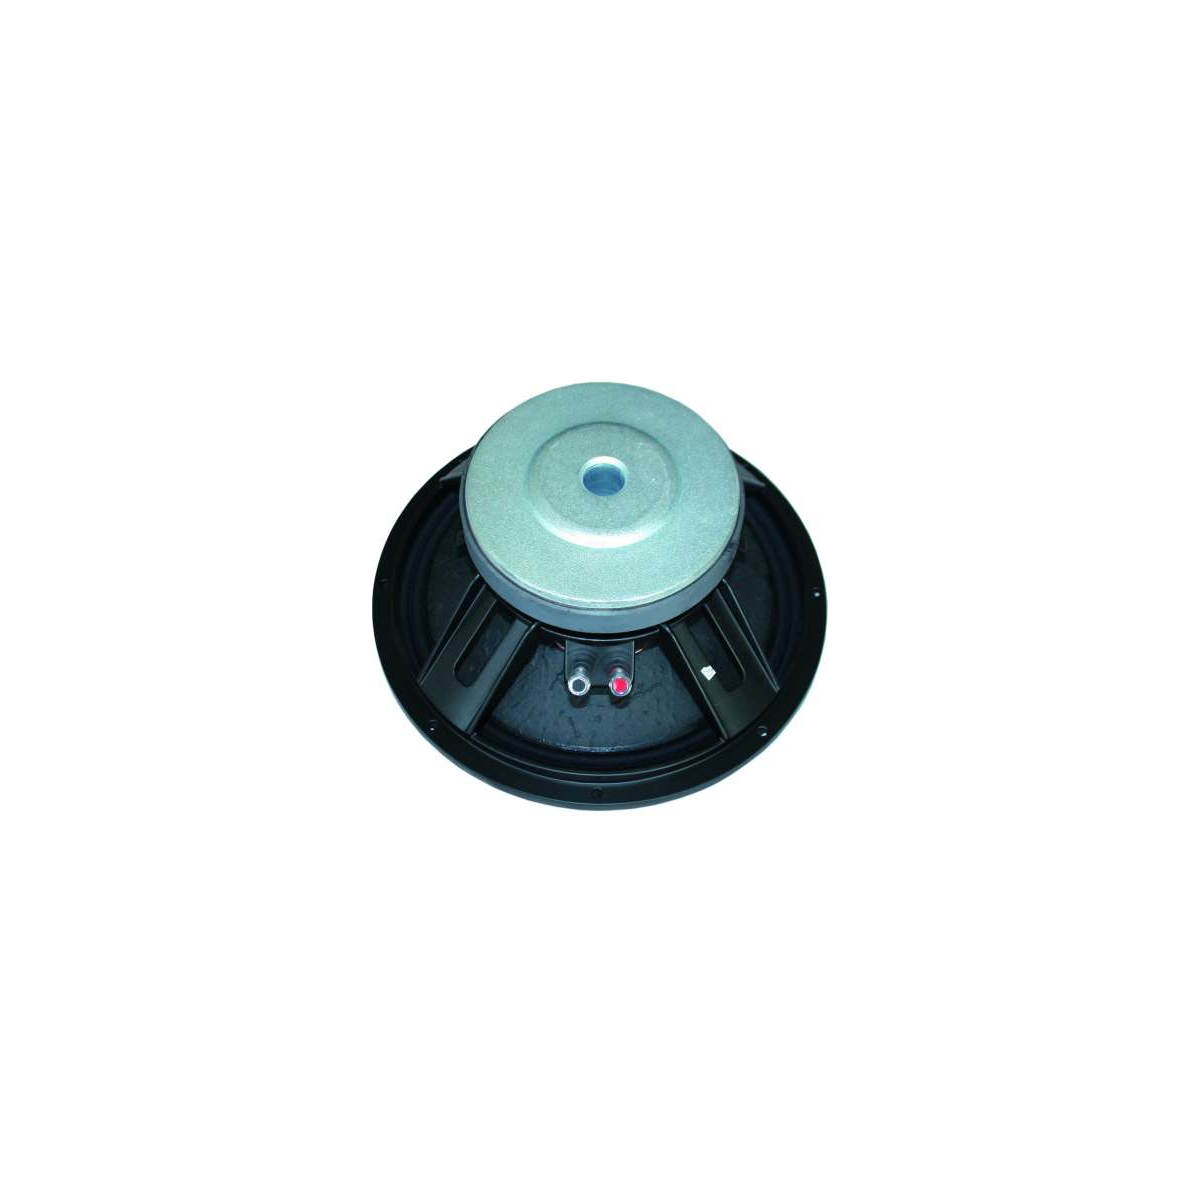 Hauts parleurs basse fréquence - Definitive Audio - F 1503 B